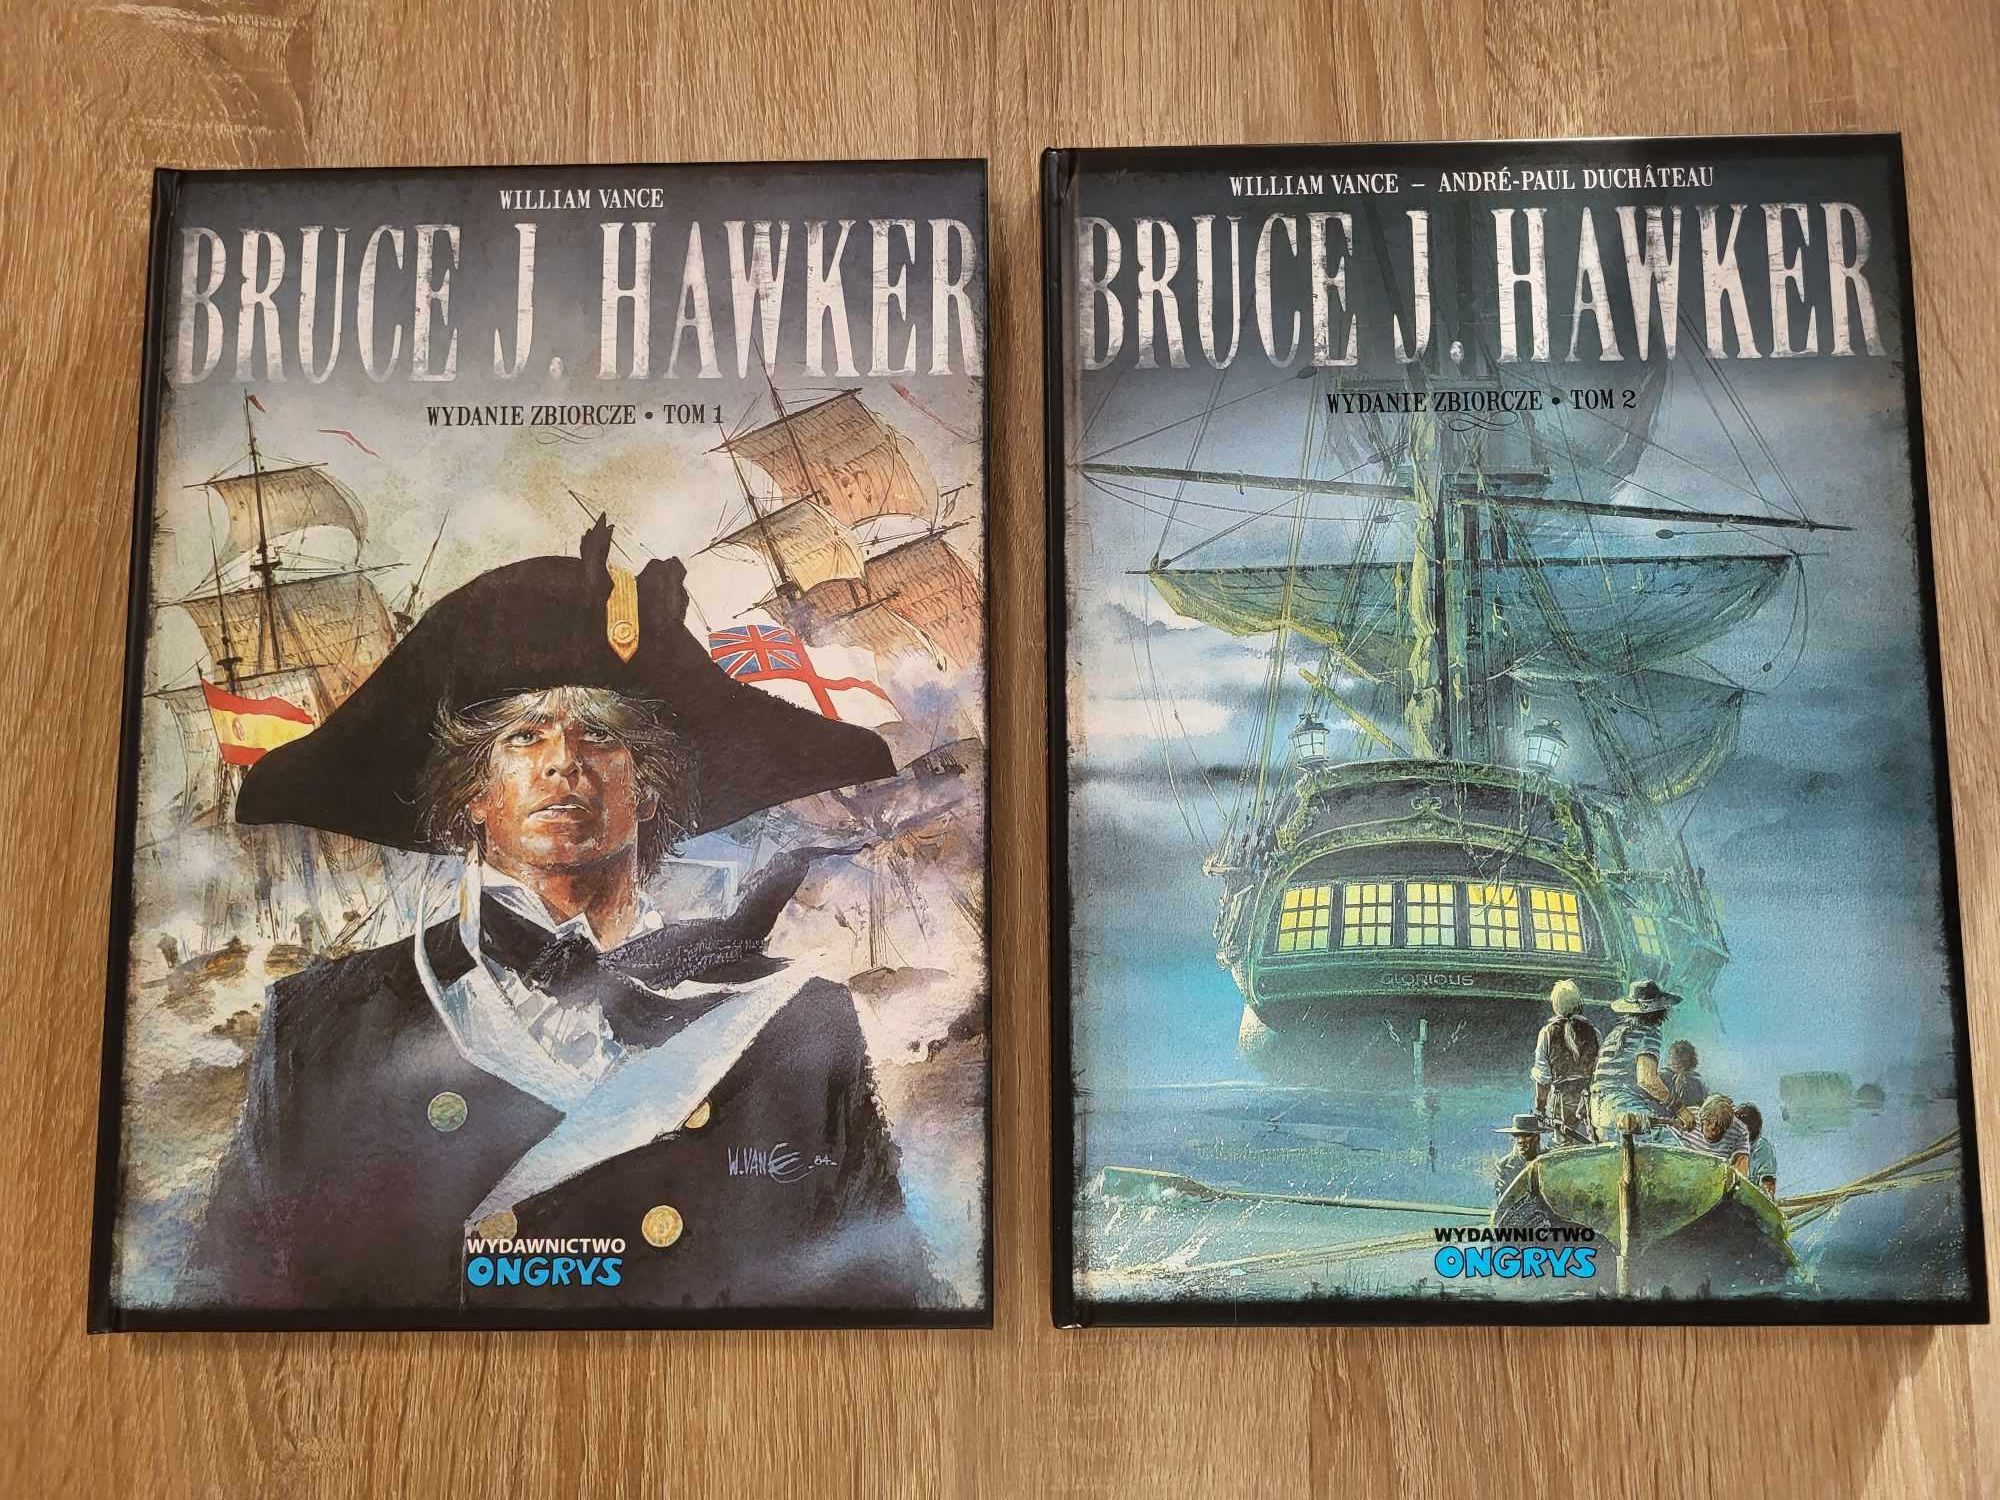 Komiksy Bruce J. Hawker Tom 1 i 2 wydanie zbiorcze